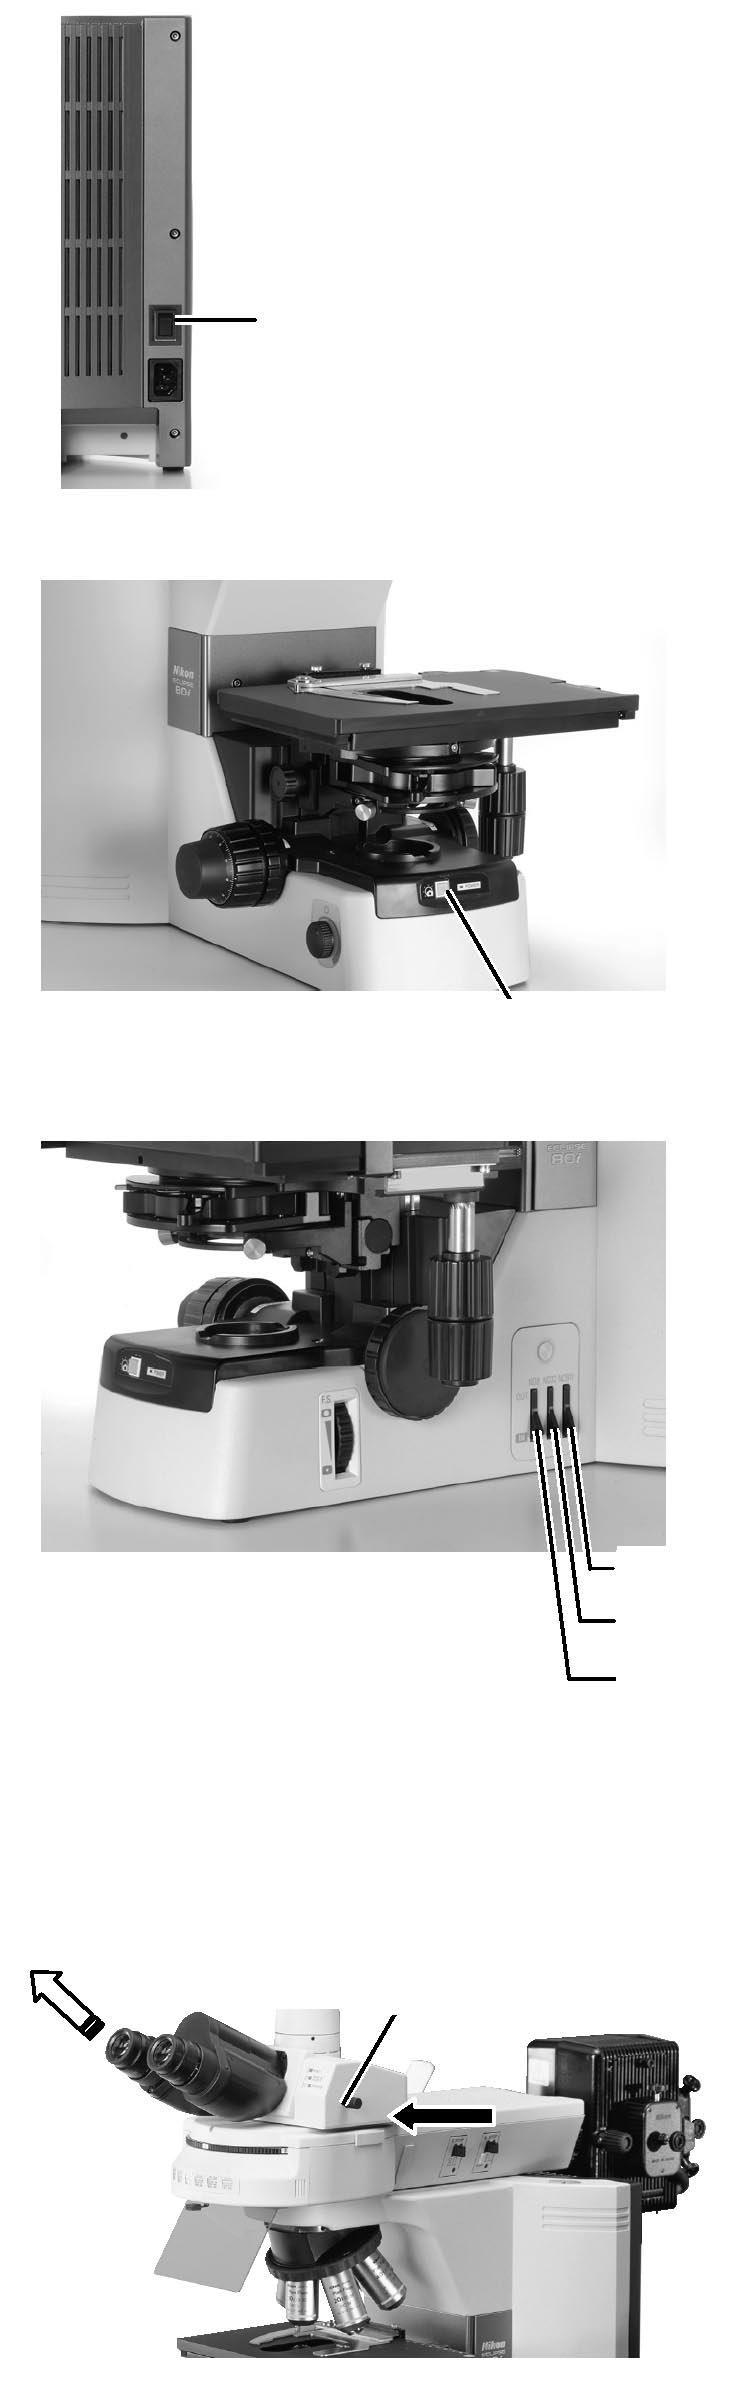 2.3 Mikroskopování ve světlém poli 1. Zapněte mikroskop. Hlavní vypínač přepněte do polohy I 2. Stiskněte tlačítko obnovení nastavení. Stiskněte tlačítko obnovení nastavení 3.